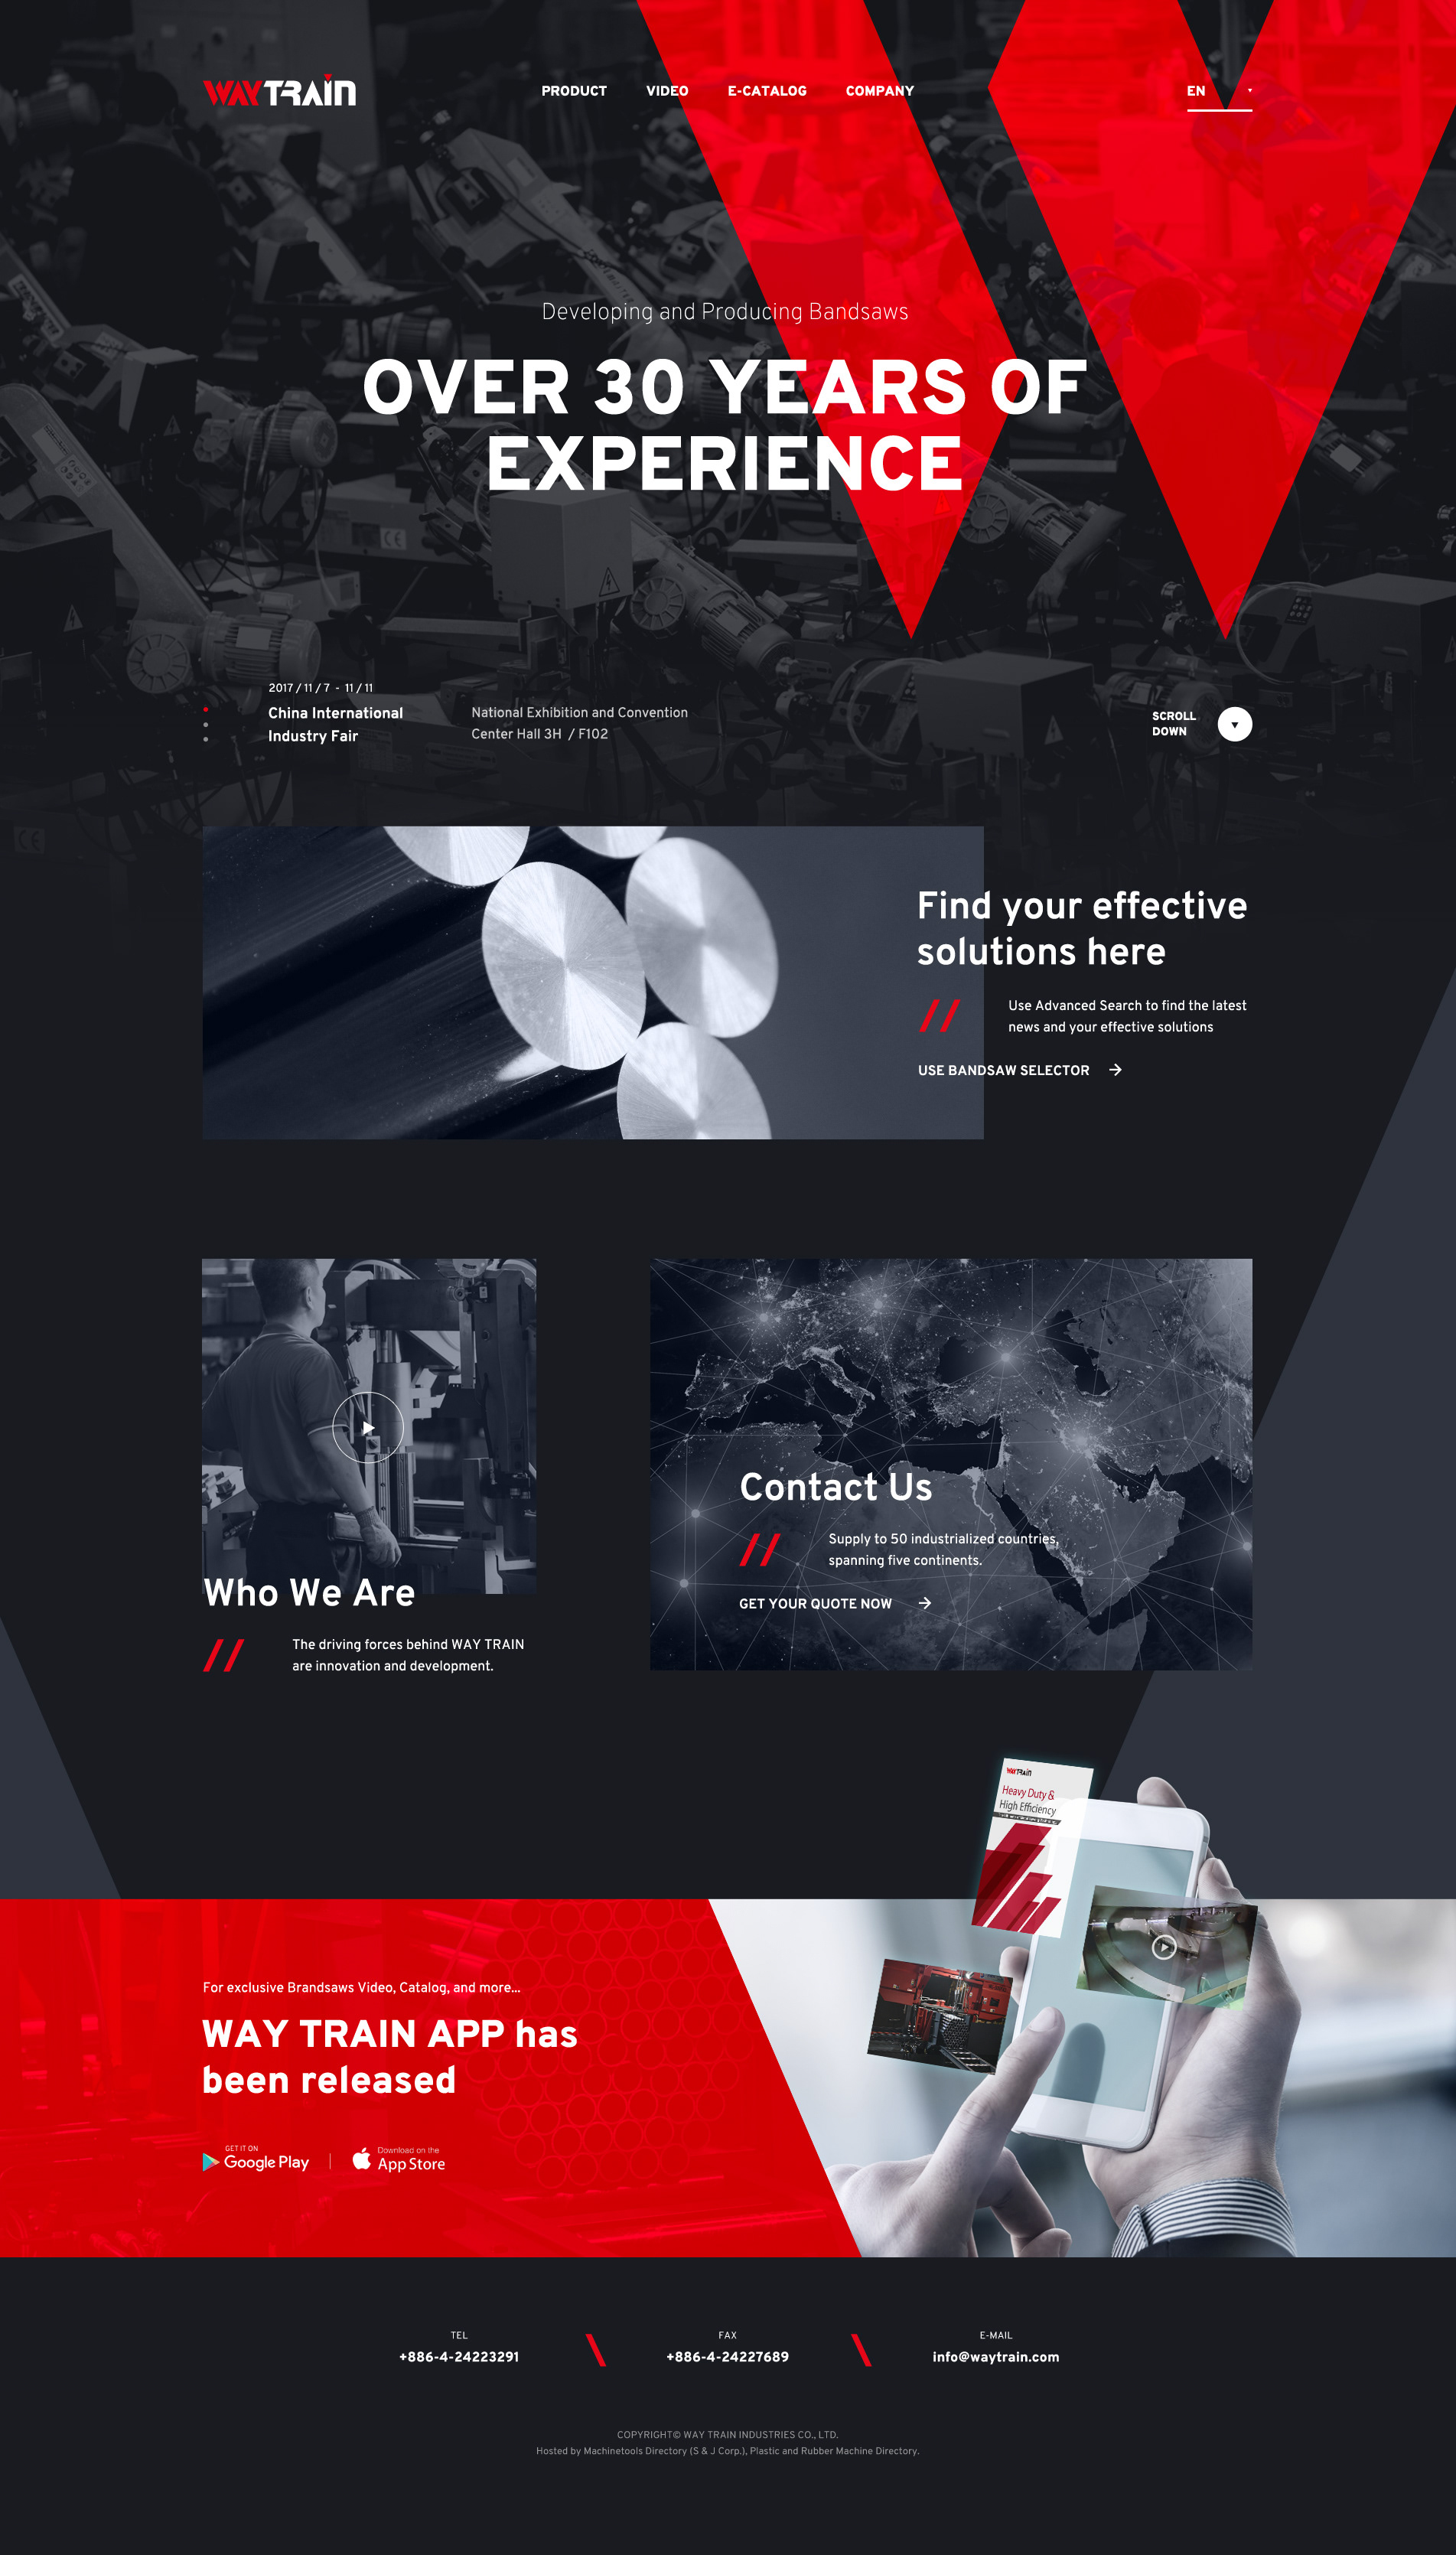 Mẫu thiết kế website Giới thiệu công ty lĩnh vực công nghiệp, sản xuất 01 behance_net/gallery/64945593/A